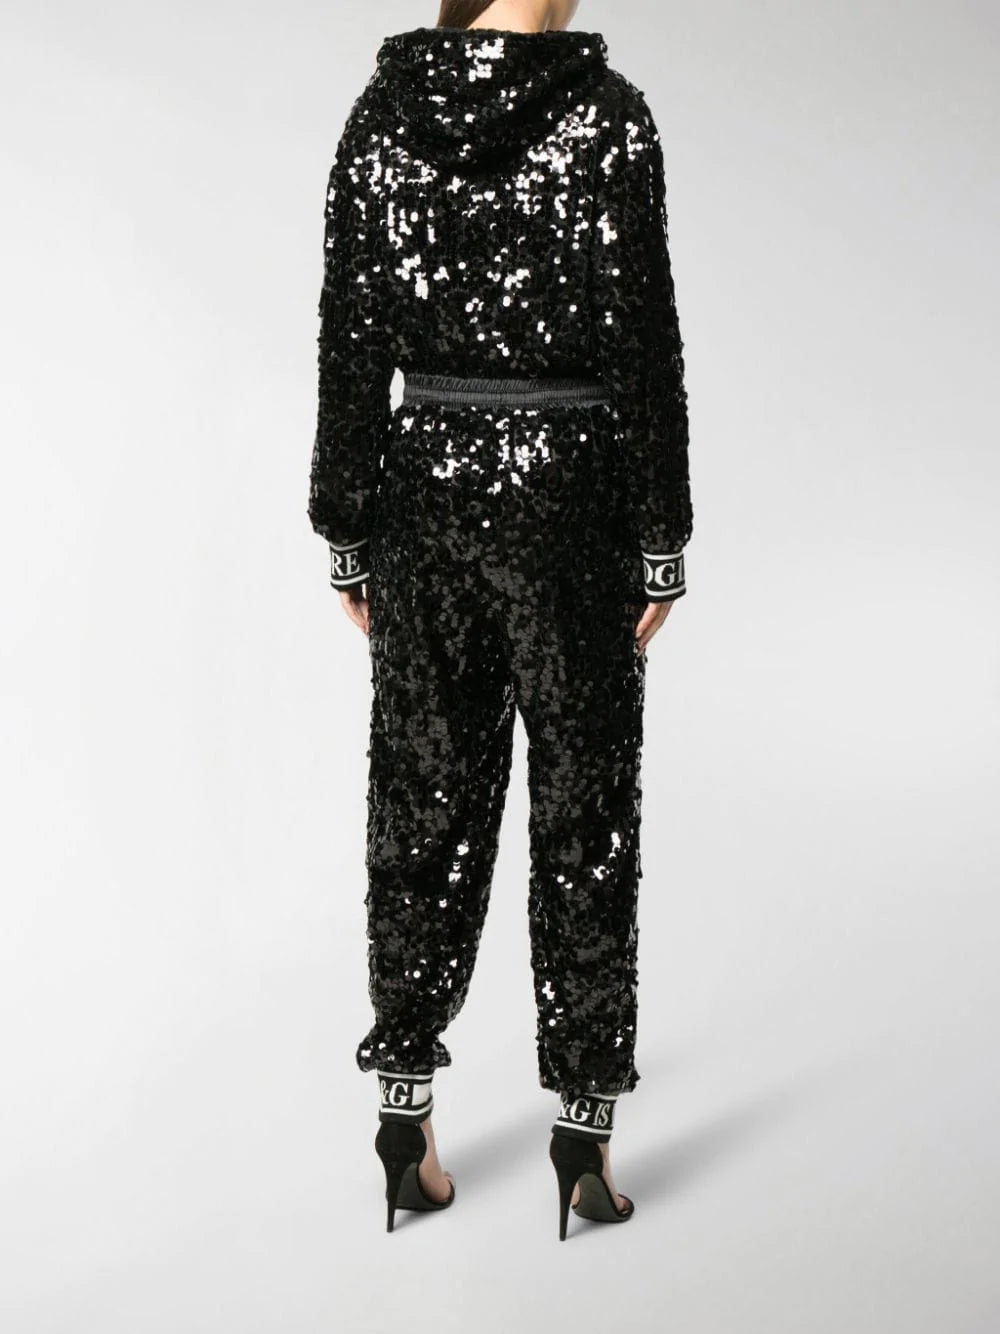 Dolce & Gabbana Sequin Jumpsuit